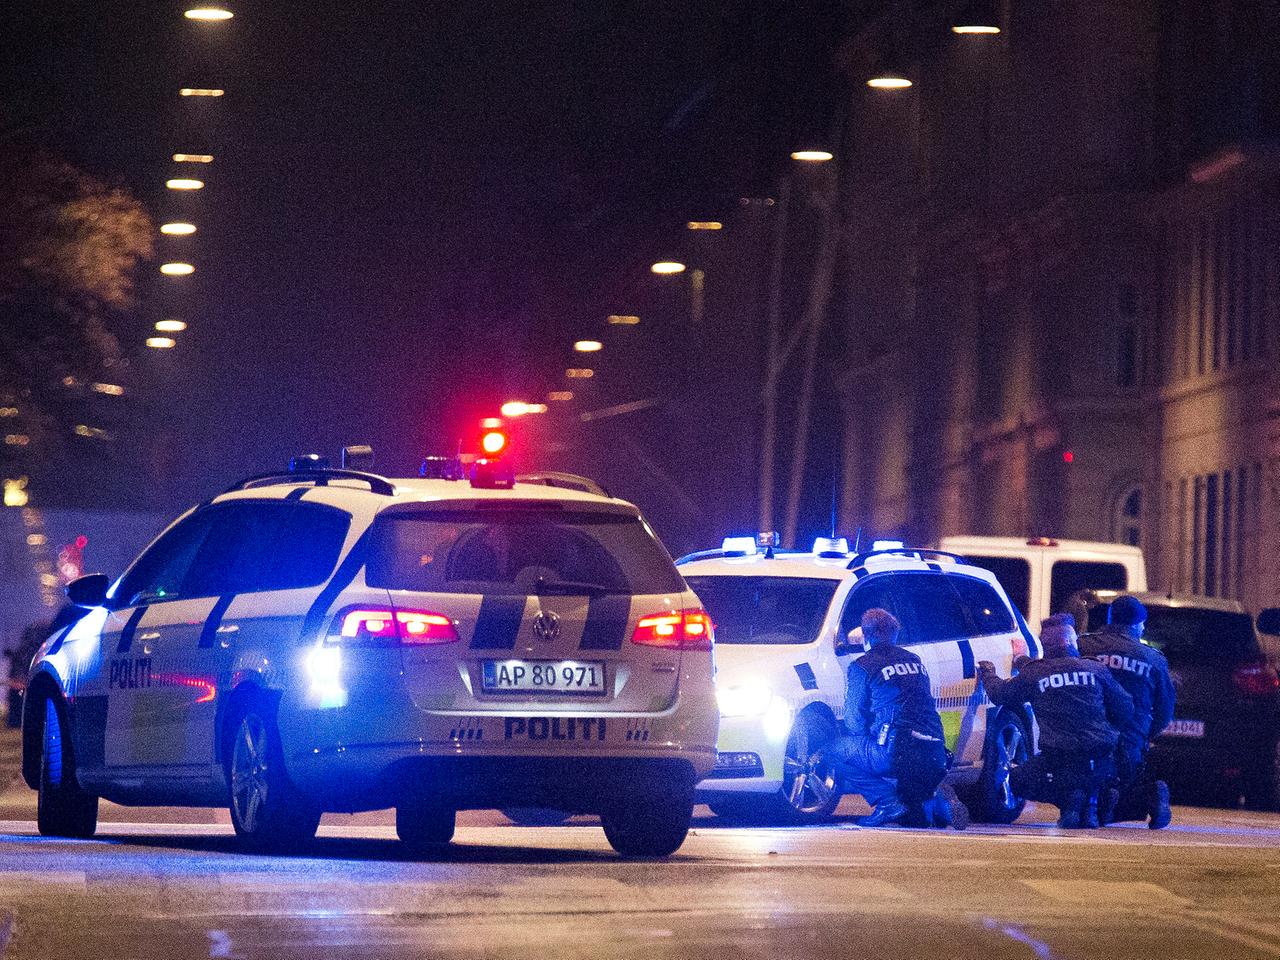 Kopenhagen, 15. Februar 2015: Polizisten nehmen Deckung hinter ihrem Auto. Offenbar wurde der Terrorist, der am Tag zuvor bei einer Diskussionsveranstaltung sowie in einer Synagoge zwei Menschen erschossen hatte, bei dem Gefecht getötet.